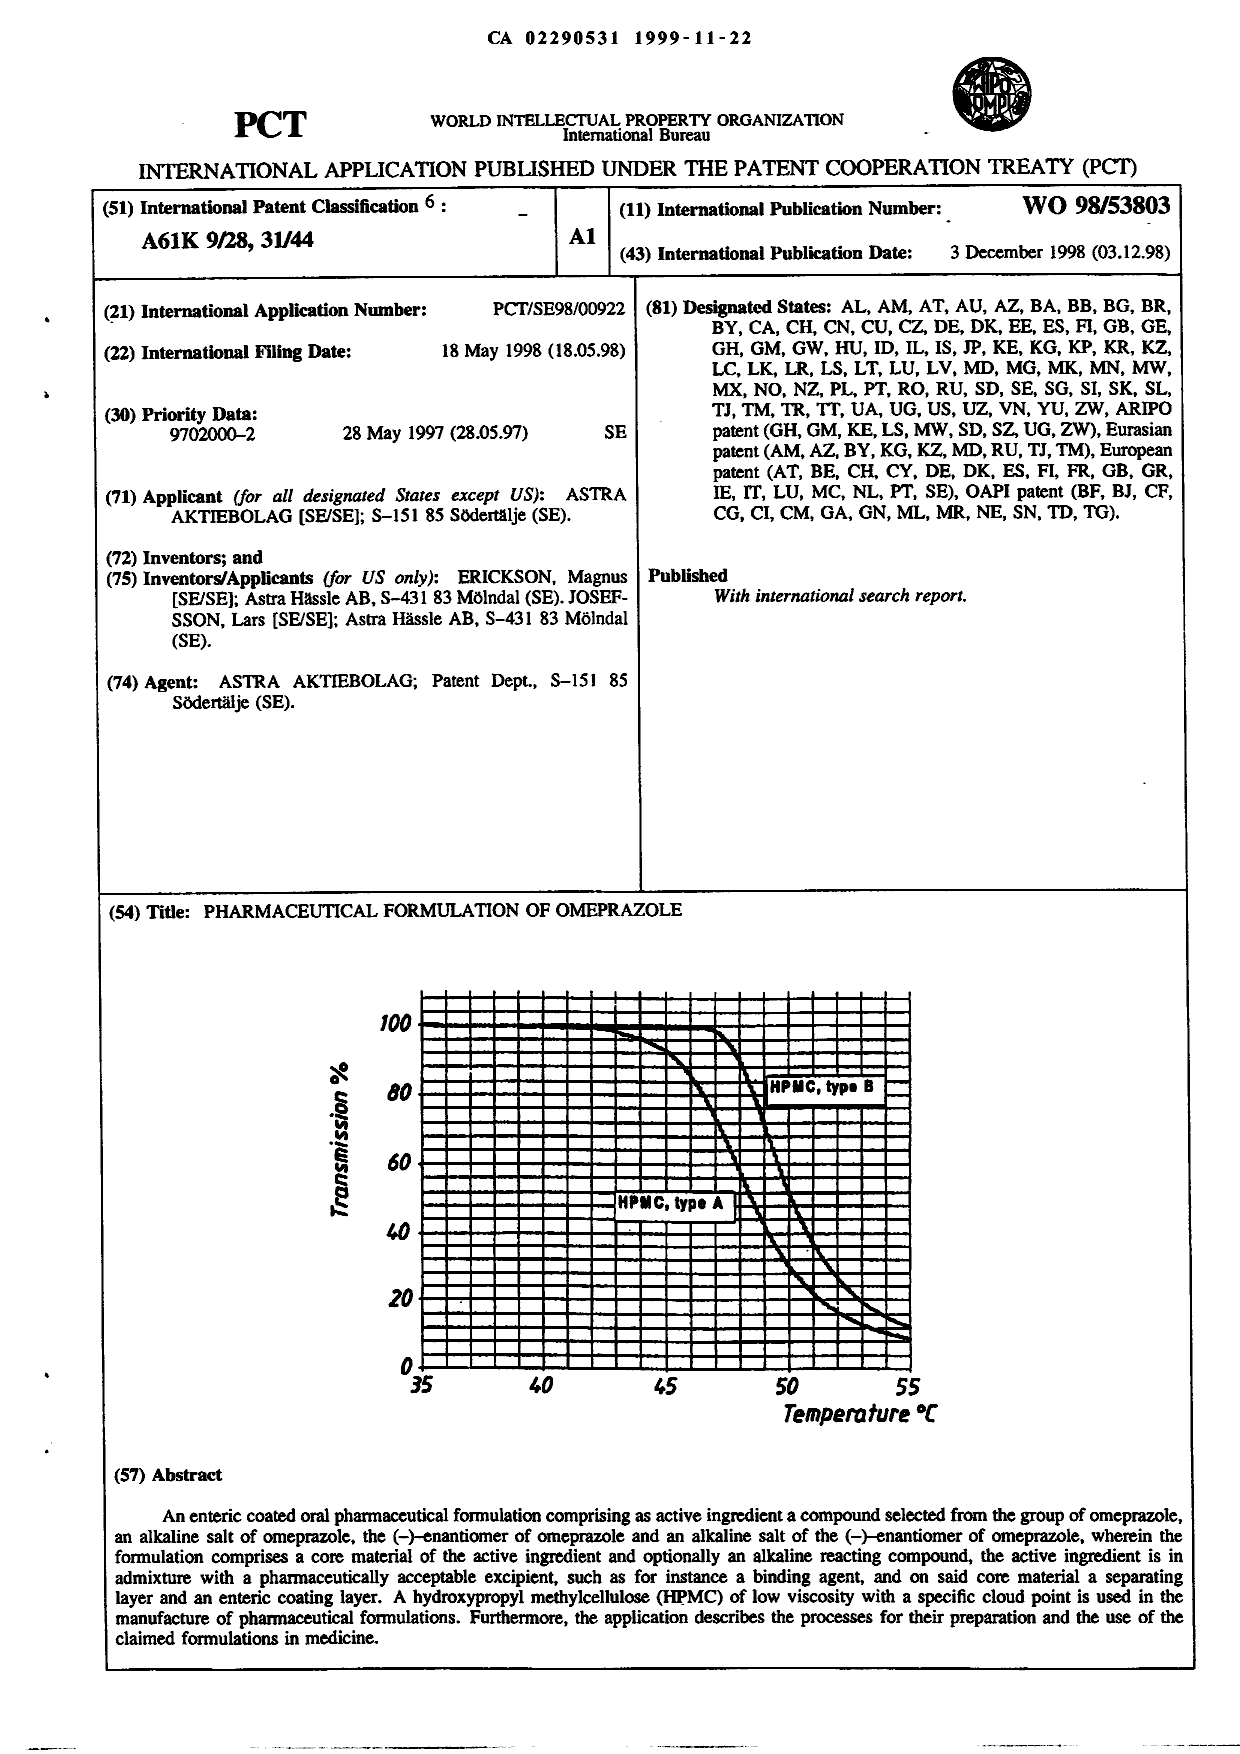 Document de brevet canadien 2290531. Abrégé 19981222. Image 1 de 1